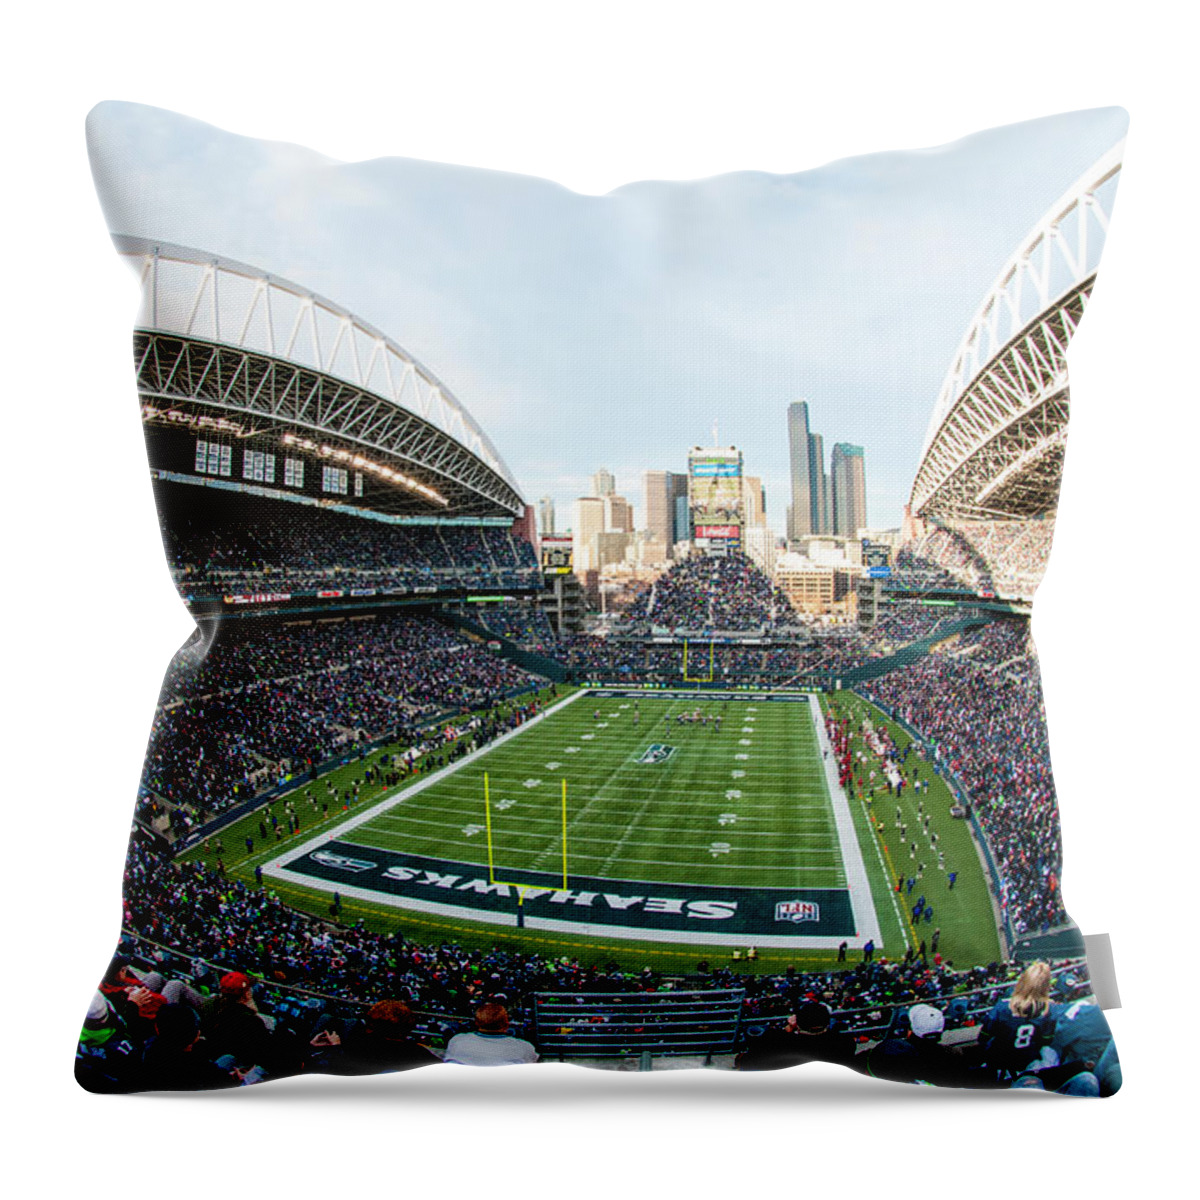 Seattle Throw Pillow featuring the photograph CenturyLink Field Shadow by Matt McDonald